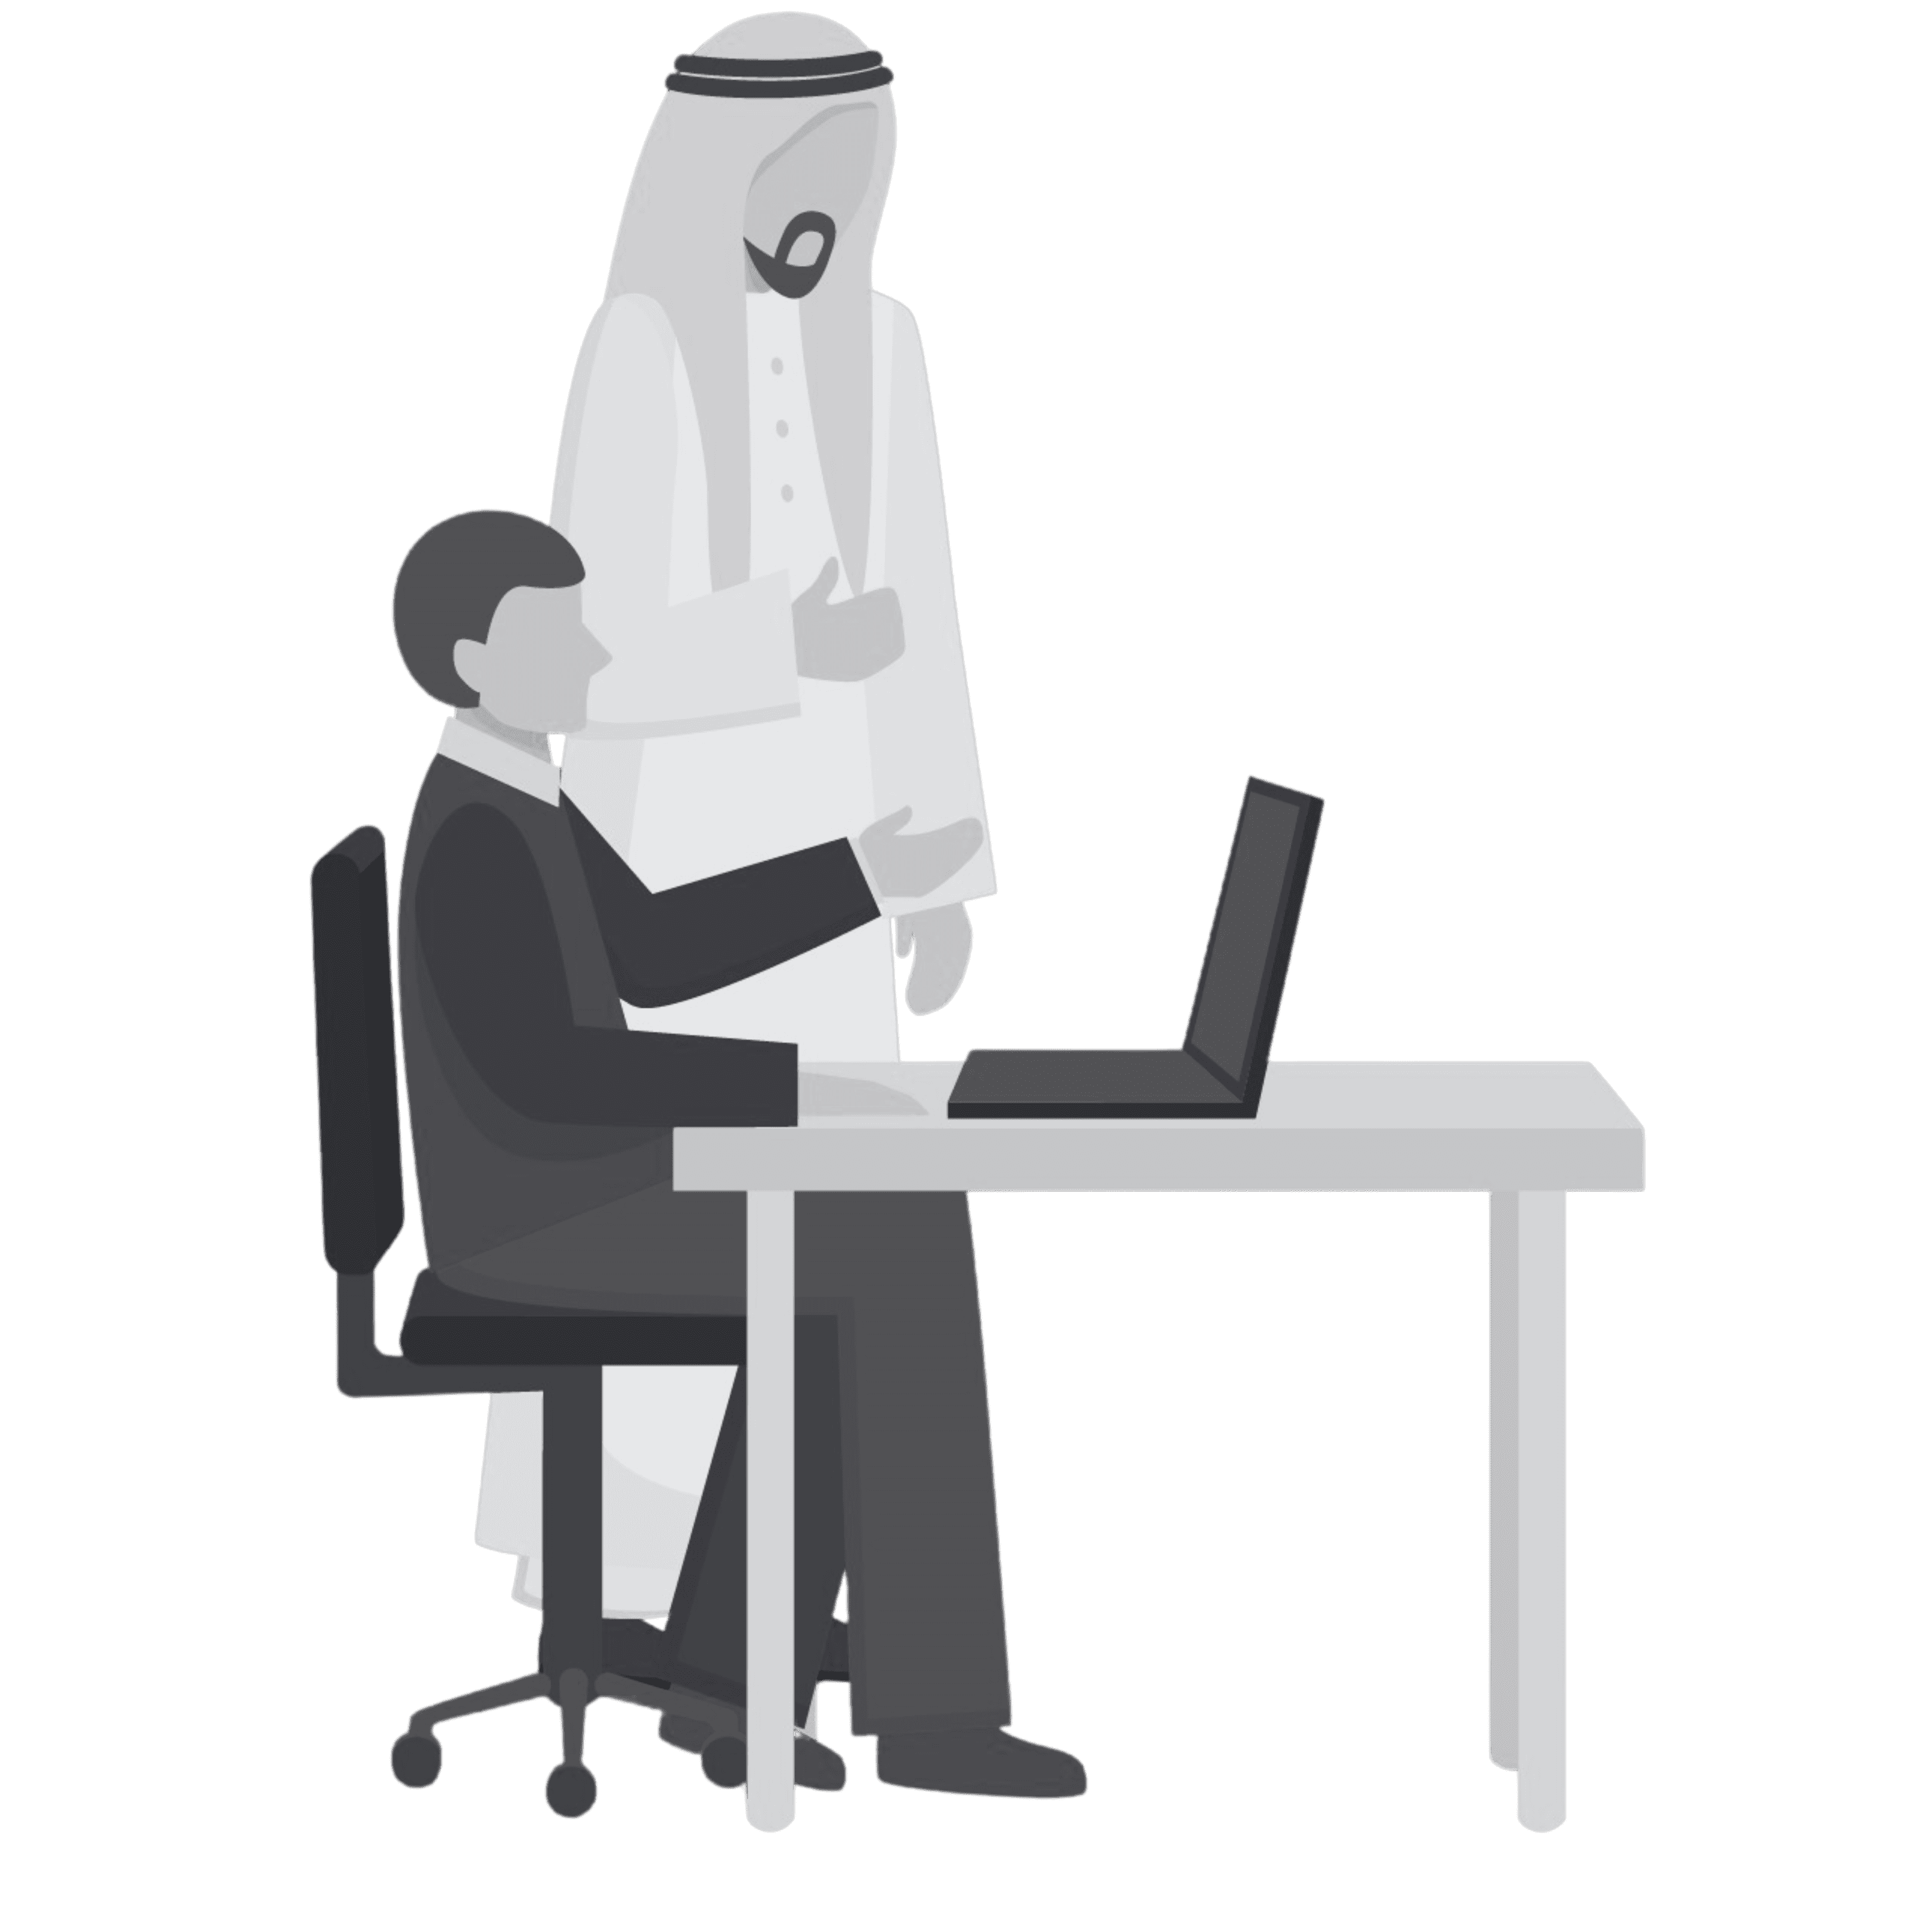 Emiratisation Program - Emiratization Initiatives